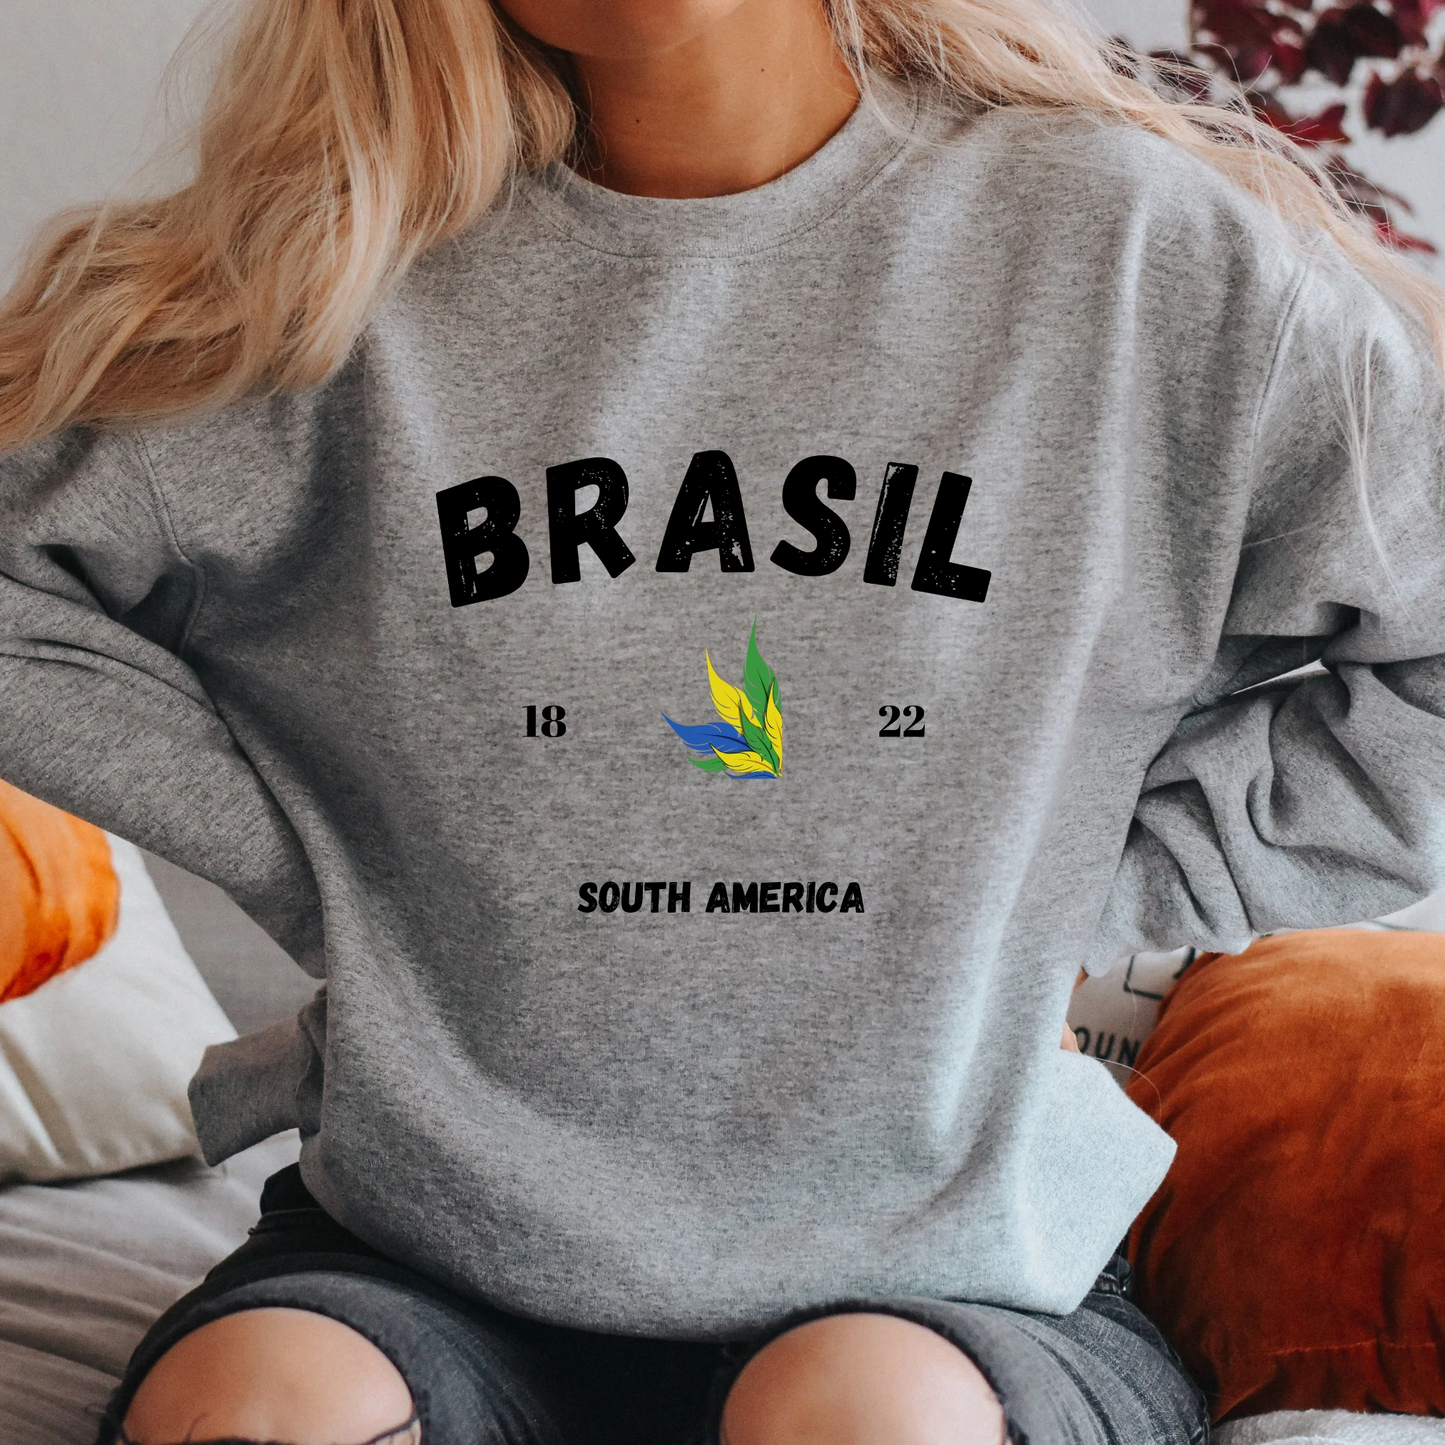 Brazil Sweatshirt